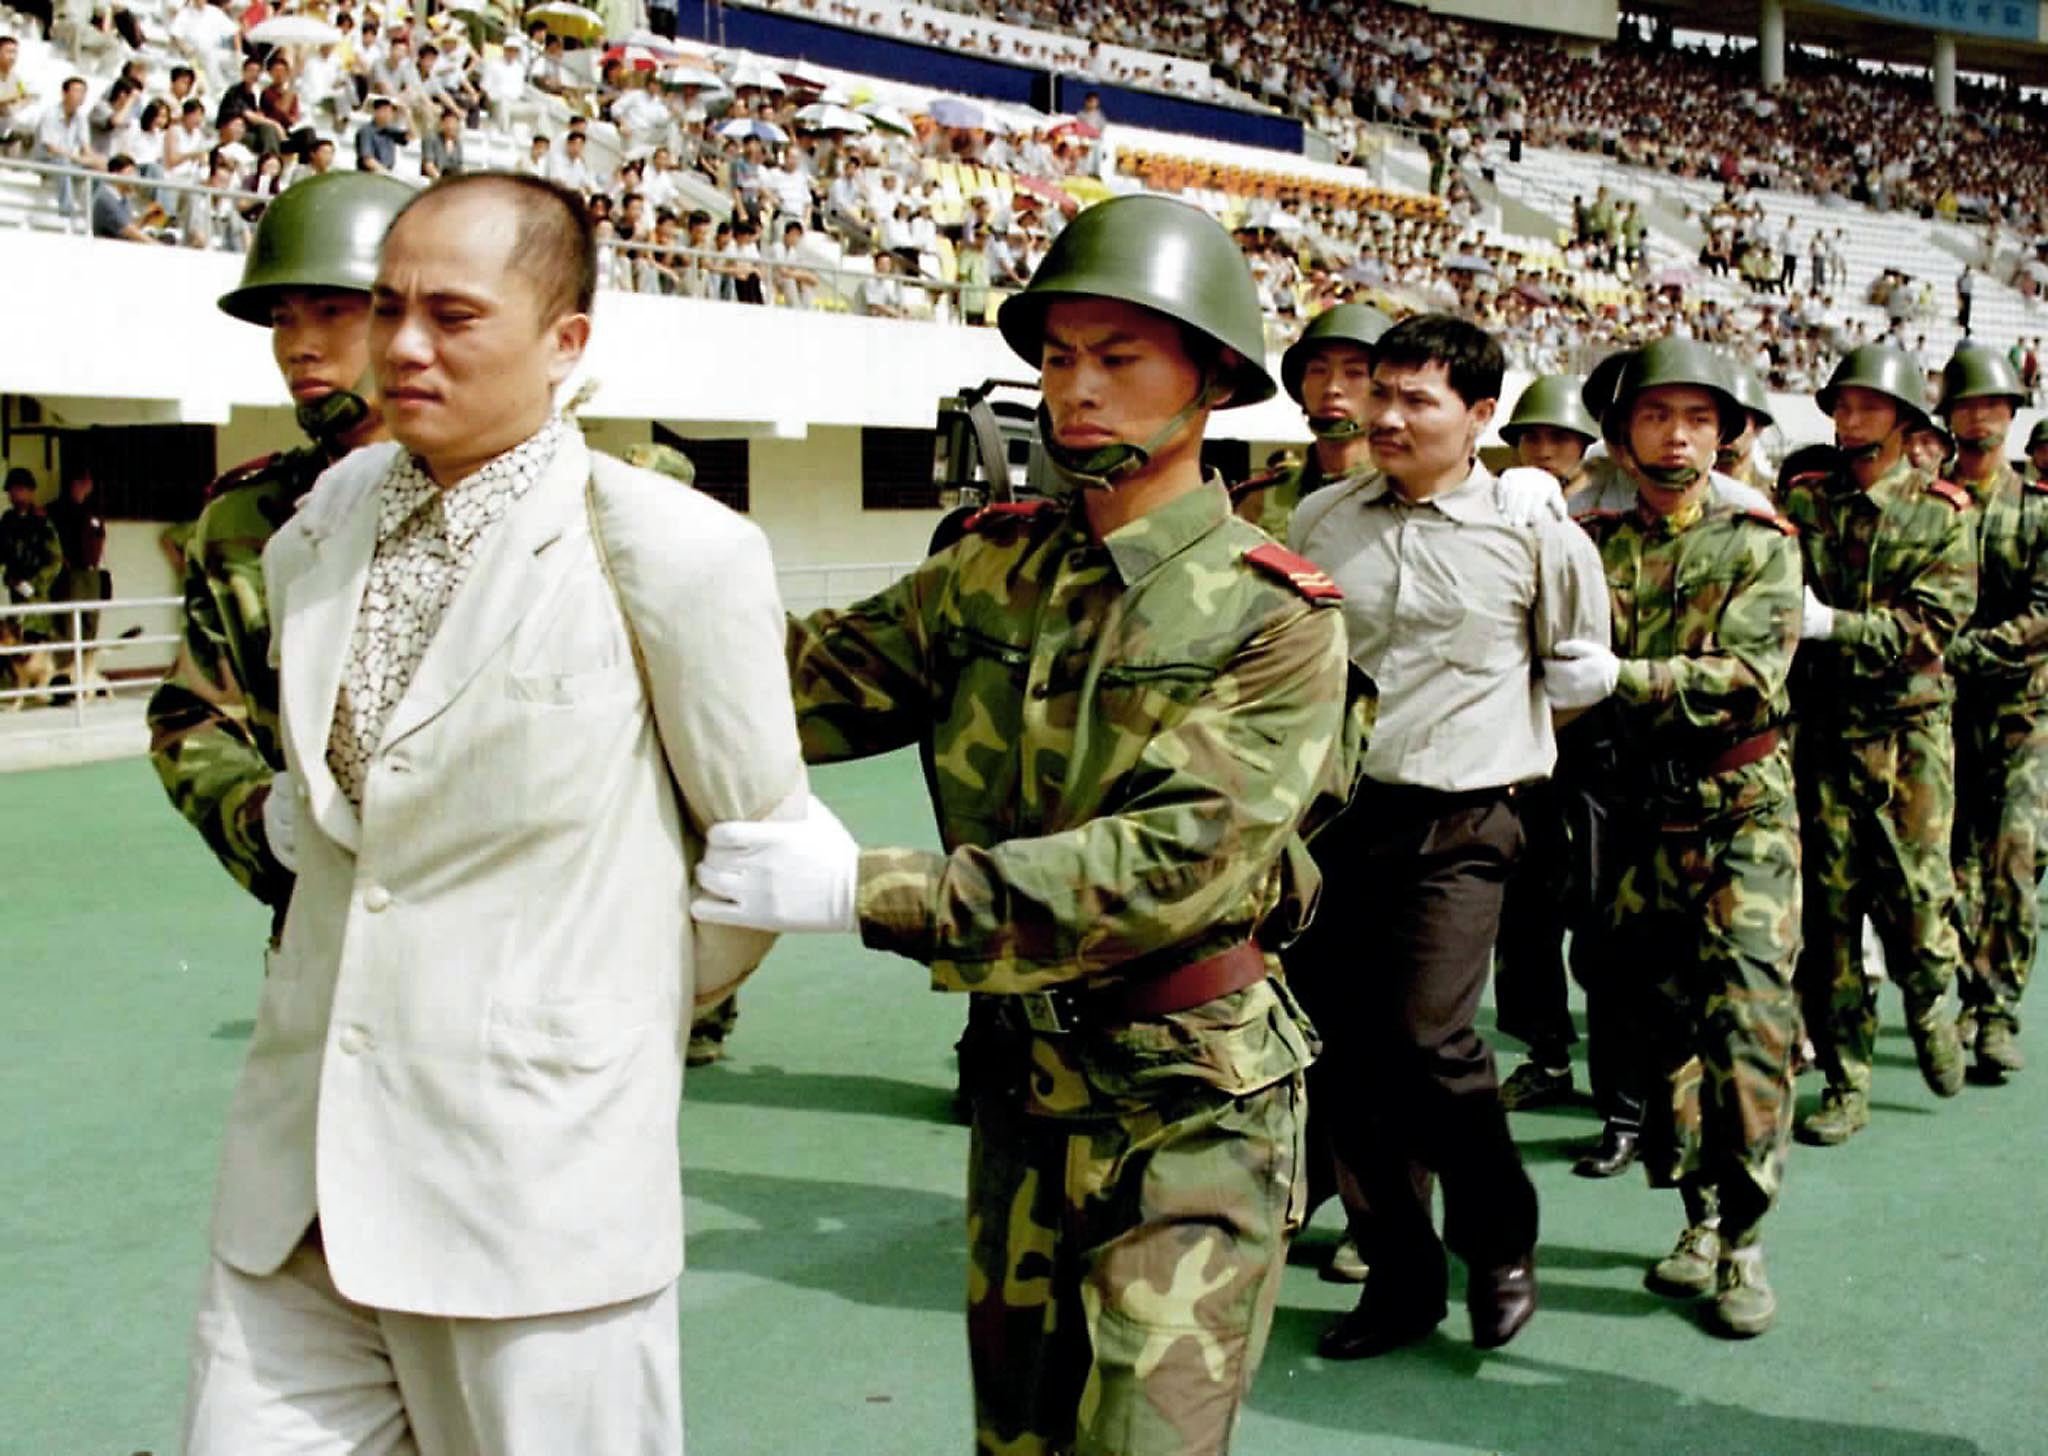 Chinezen krijgen in vol stadion doodstraf opgelegd. / EPA